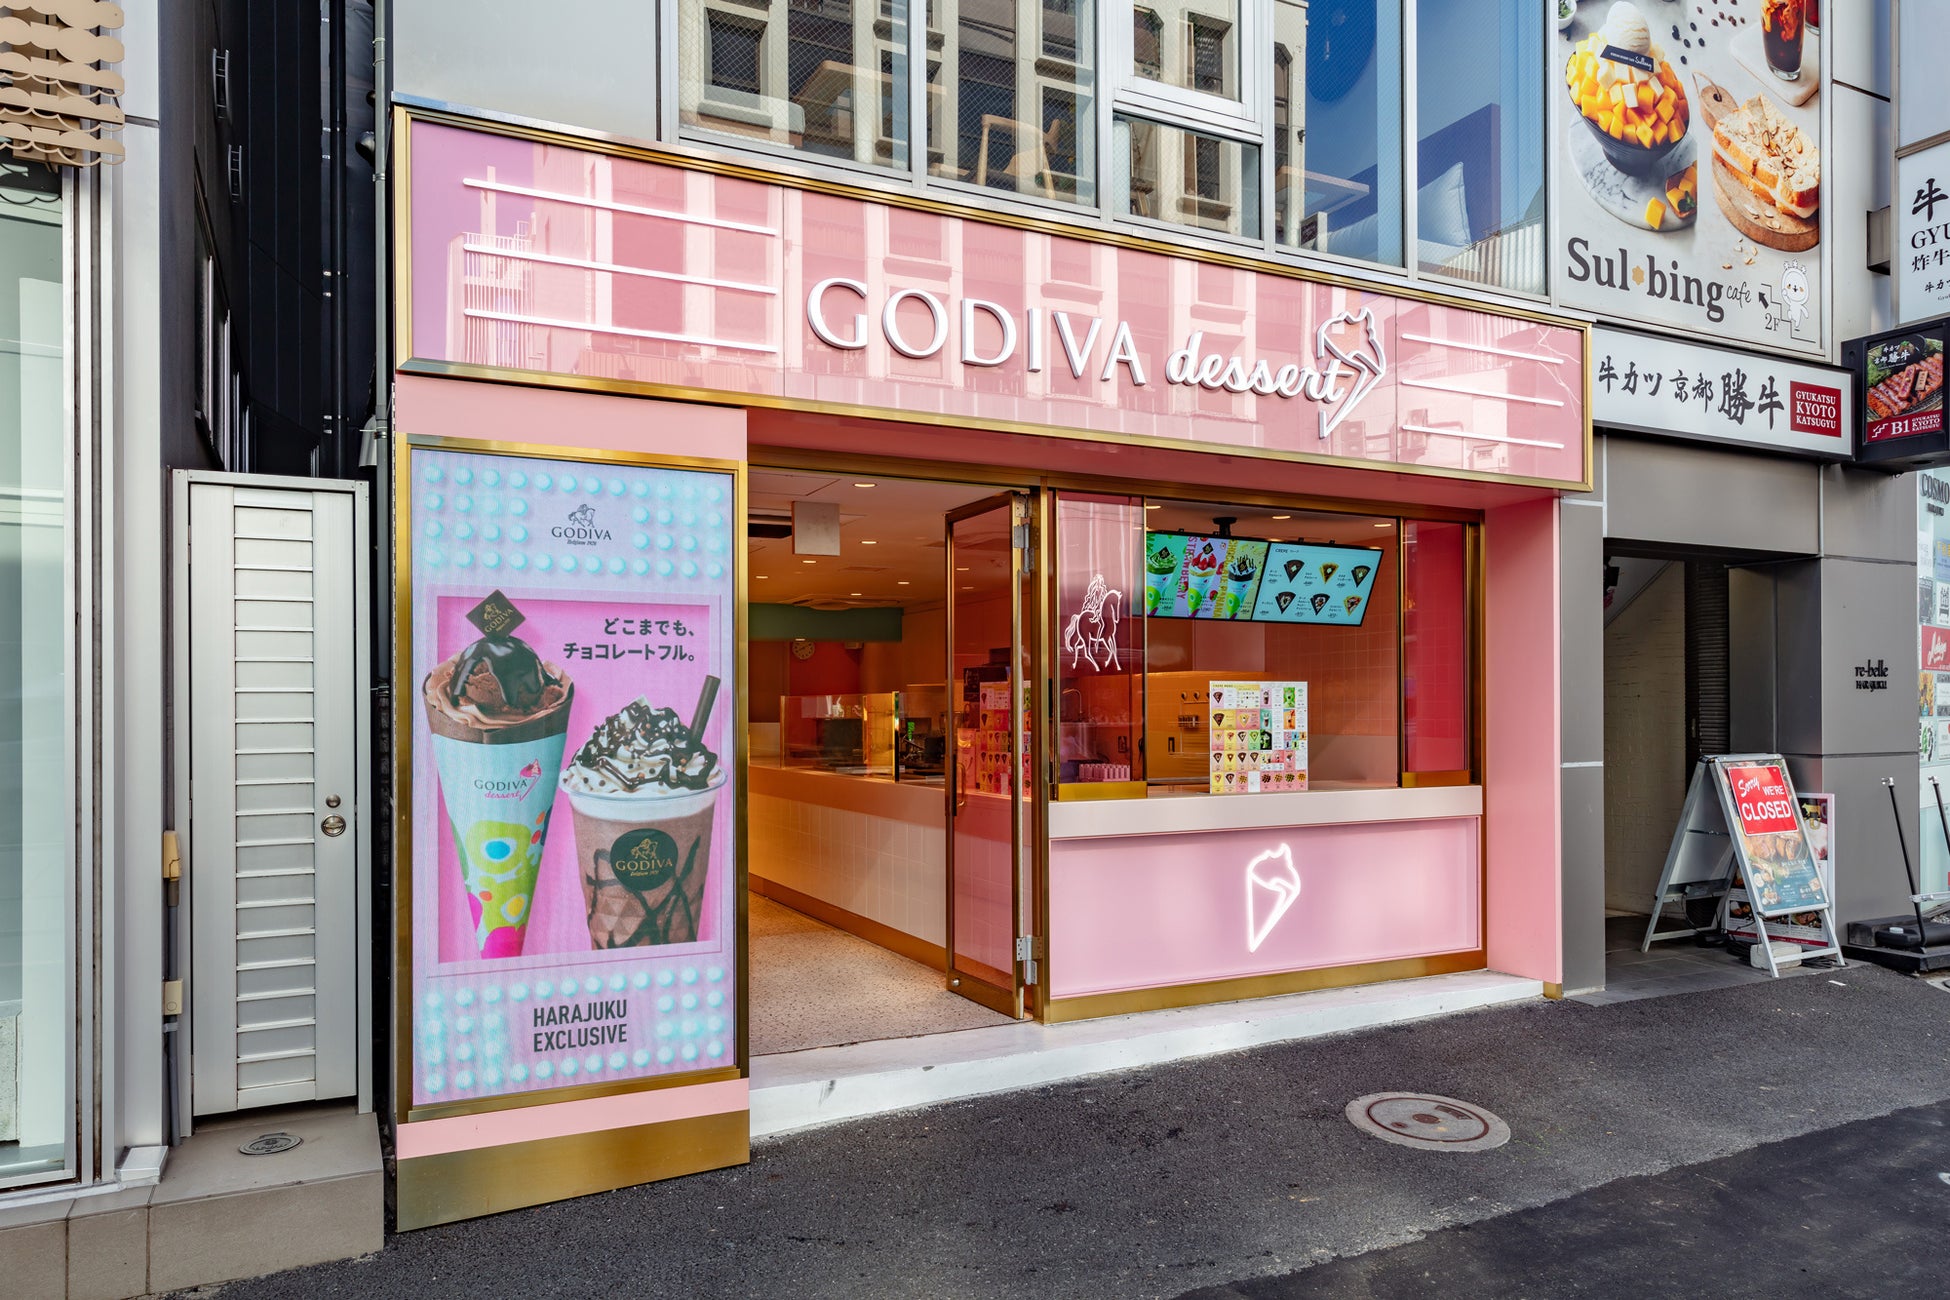 ゴディバ デザートの旗艦店となる「GODIVA dessert Harajuku（ゴディバ デザート 原宿店）」に屋外用高精細LEDビジョンを納入致しました。（アビックス株式会社）